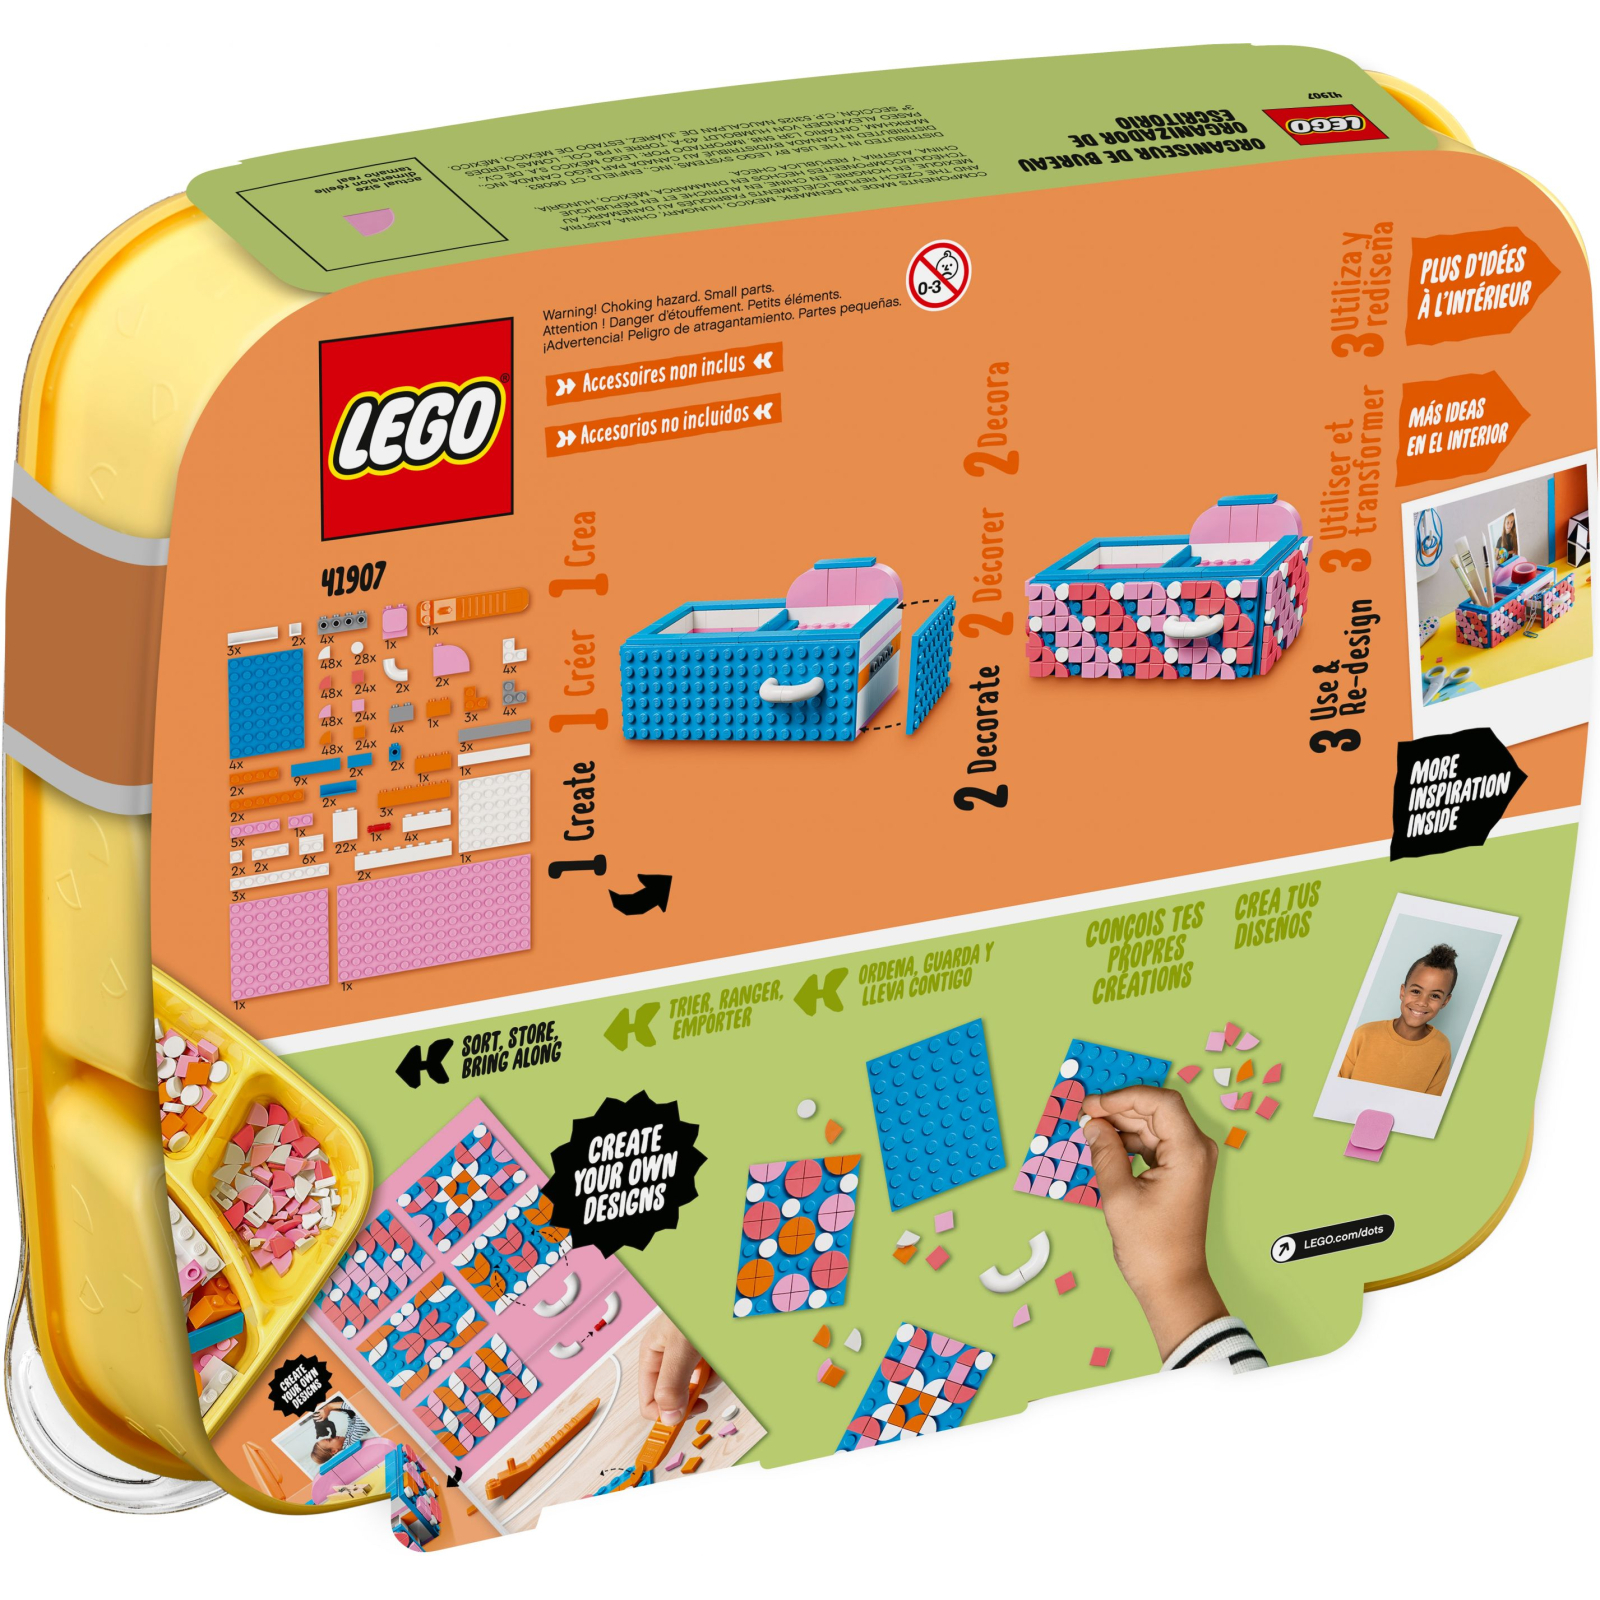 Конструктор LEGO DOTs серия 2 405 деталей (41907) изображение 7